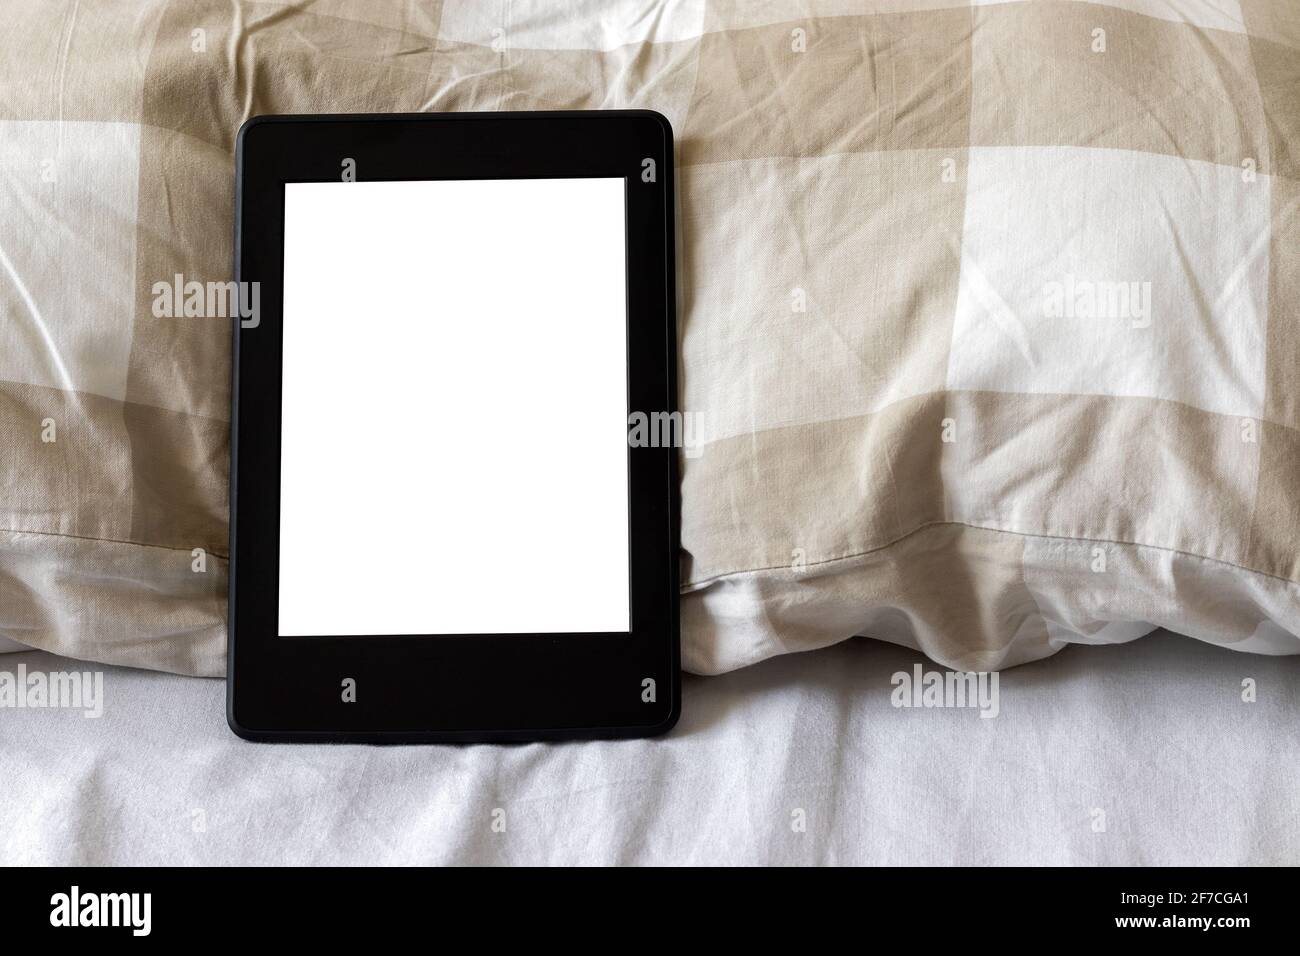 Ein modernes schwarzes elektronisches Buch mit einem leeren Bildschirm auf einem weißen und beigen Bett. Mockup Tablet auf der Bettwäsche. Nahaufnahme Stockfoto